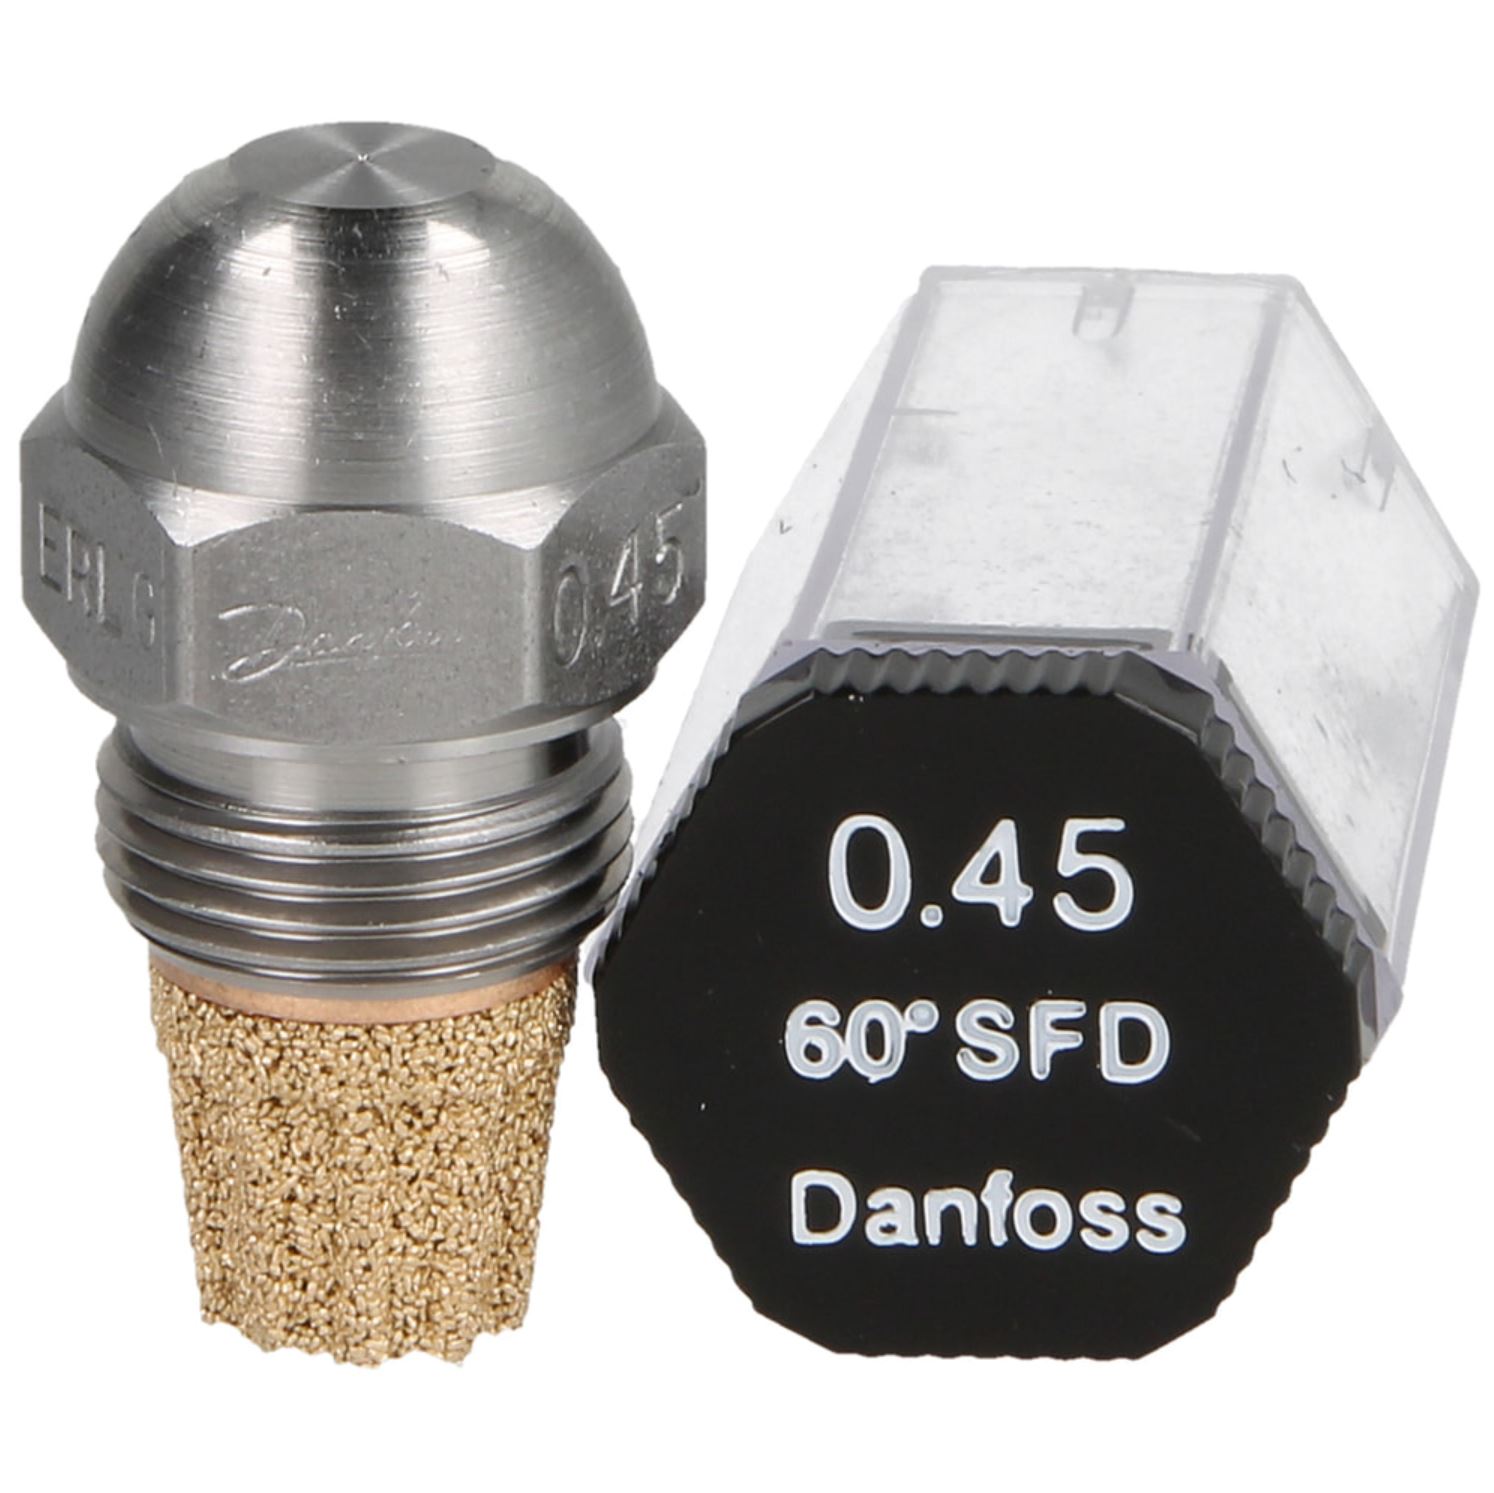 Danfoss-Öldüse 0,45 60°SF-D